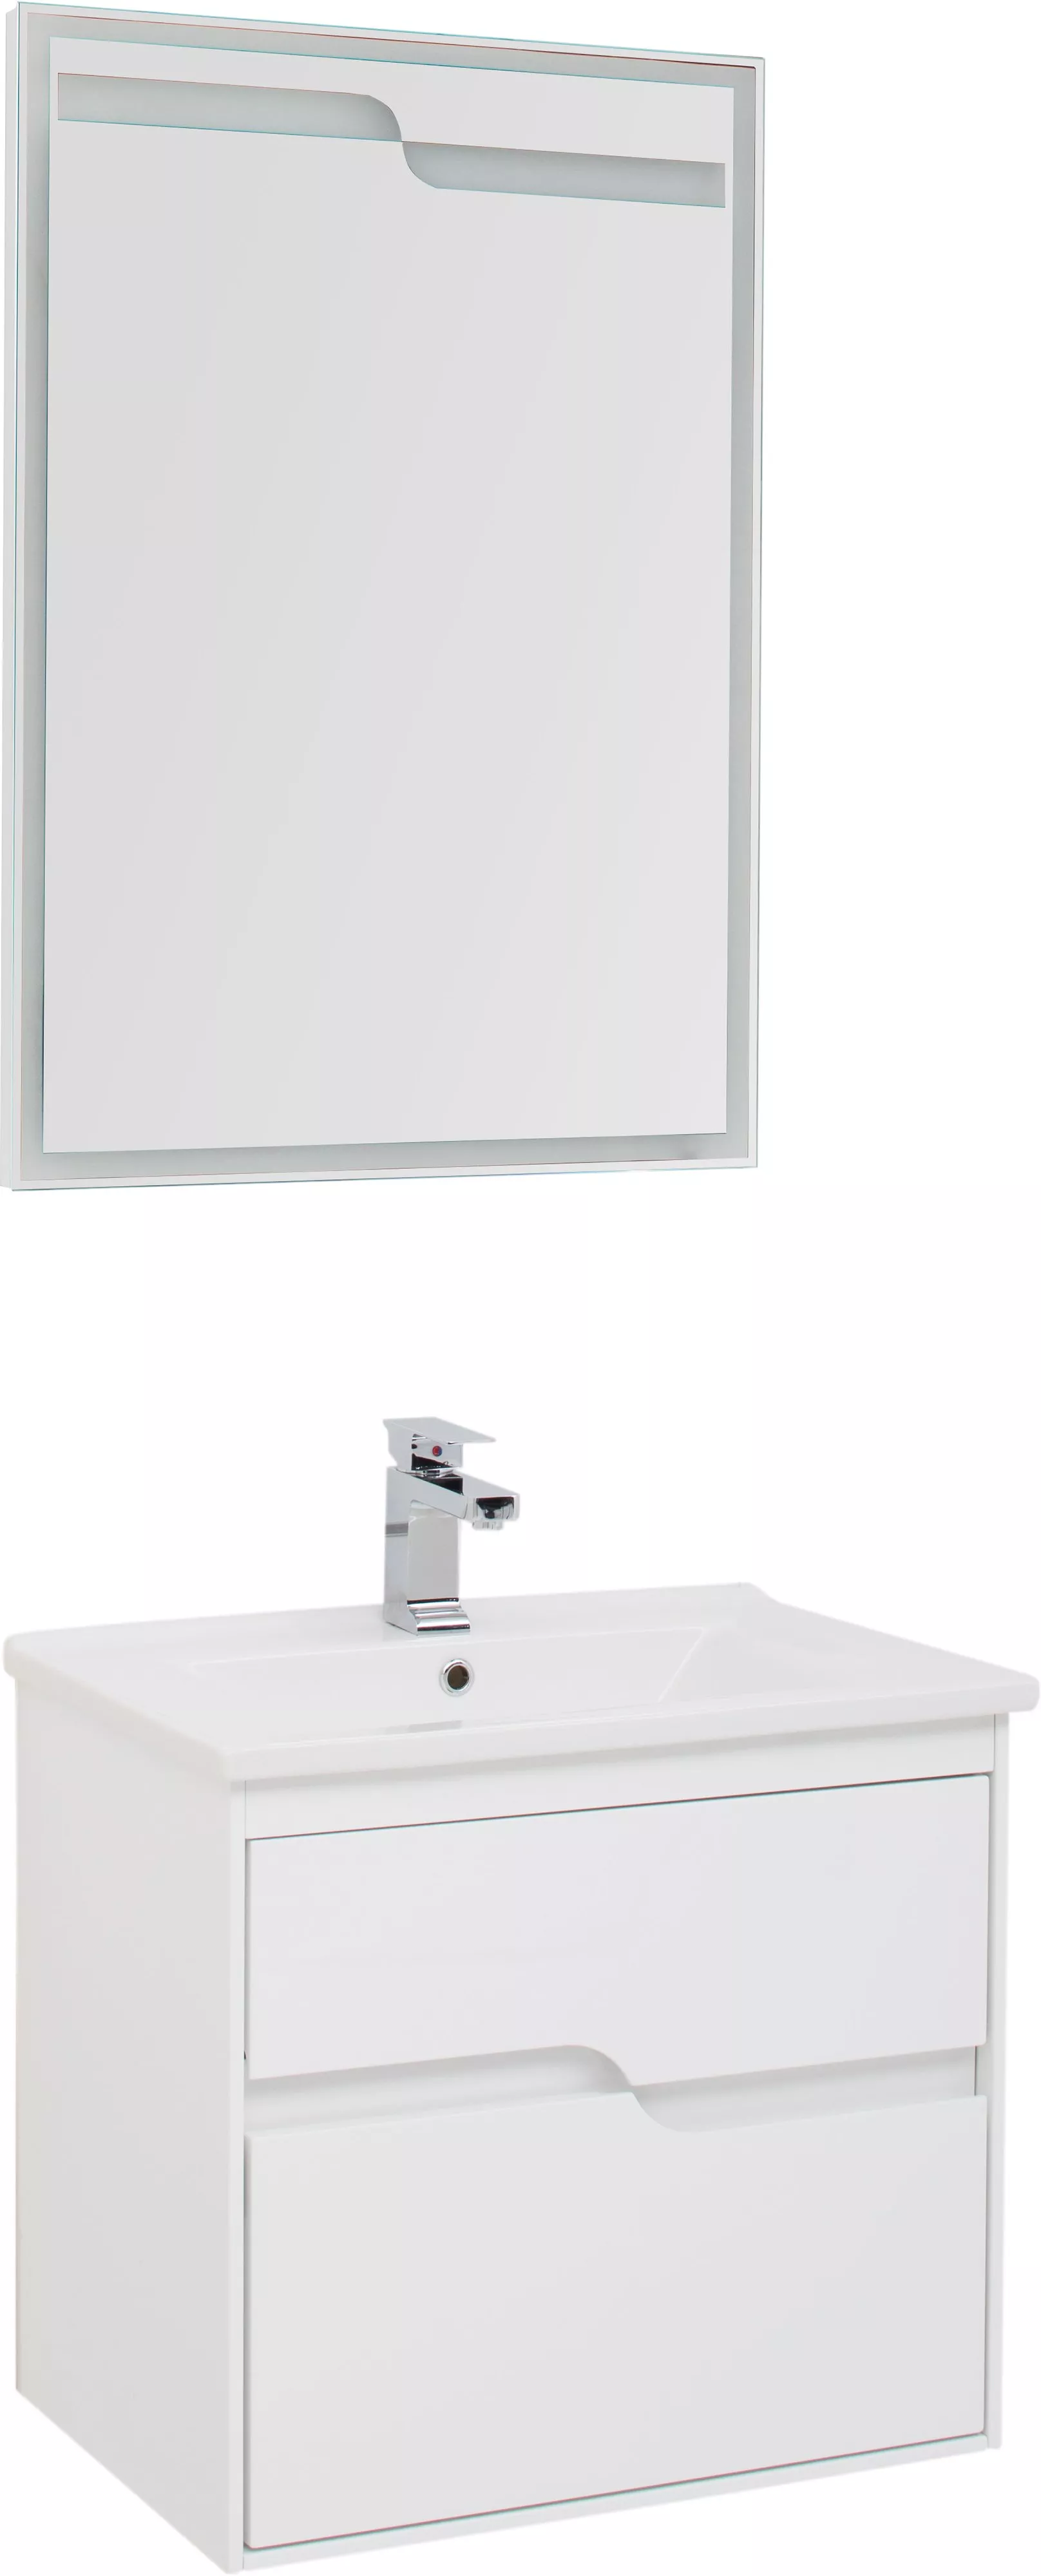 Мебель для ванной Aquanet Модена 65, размер 65, цвет белый - фото 1